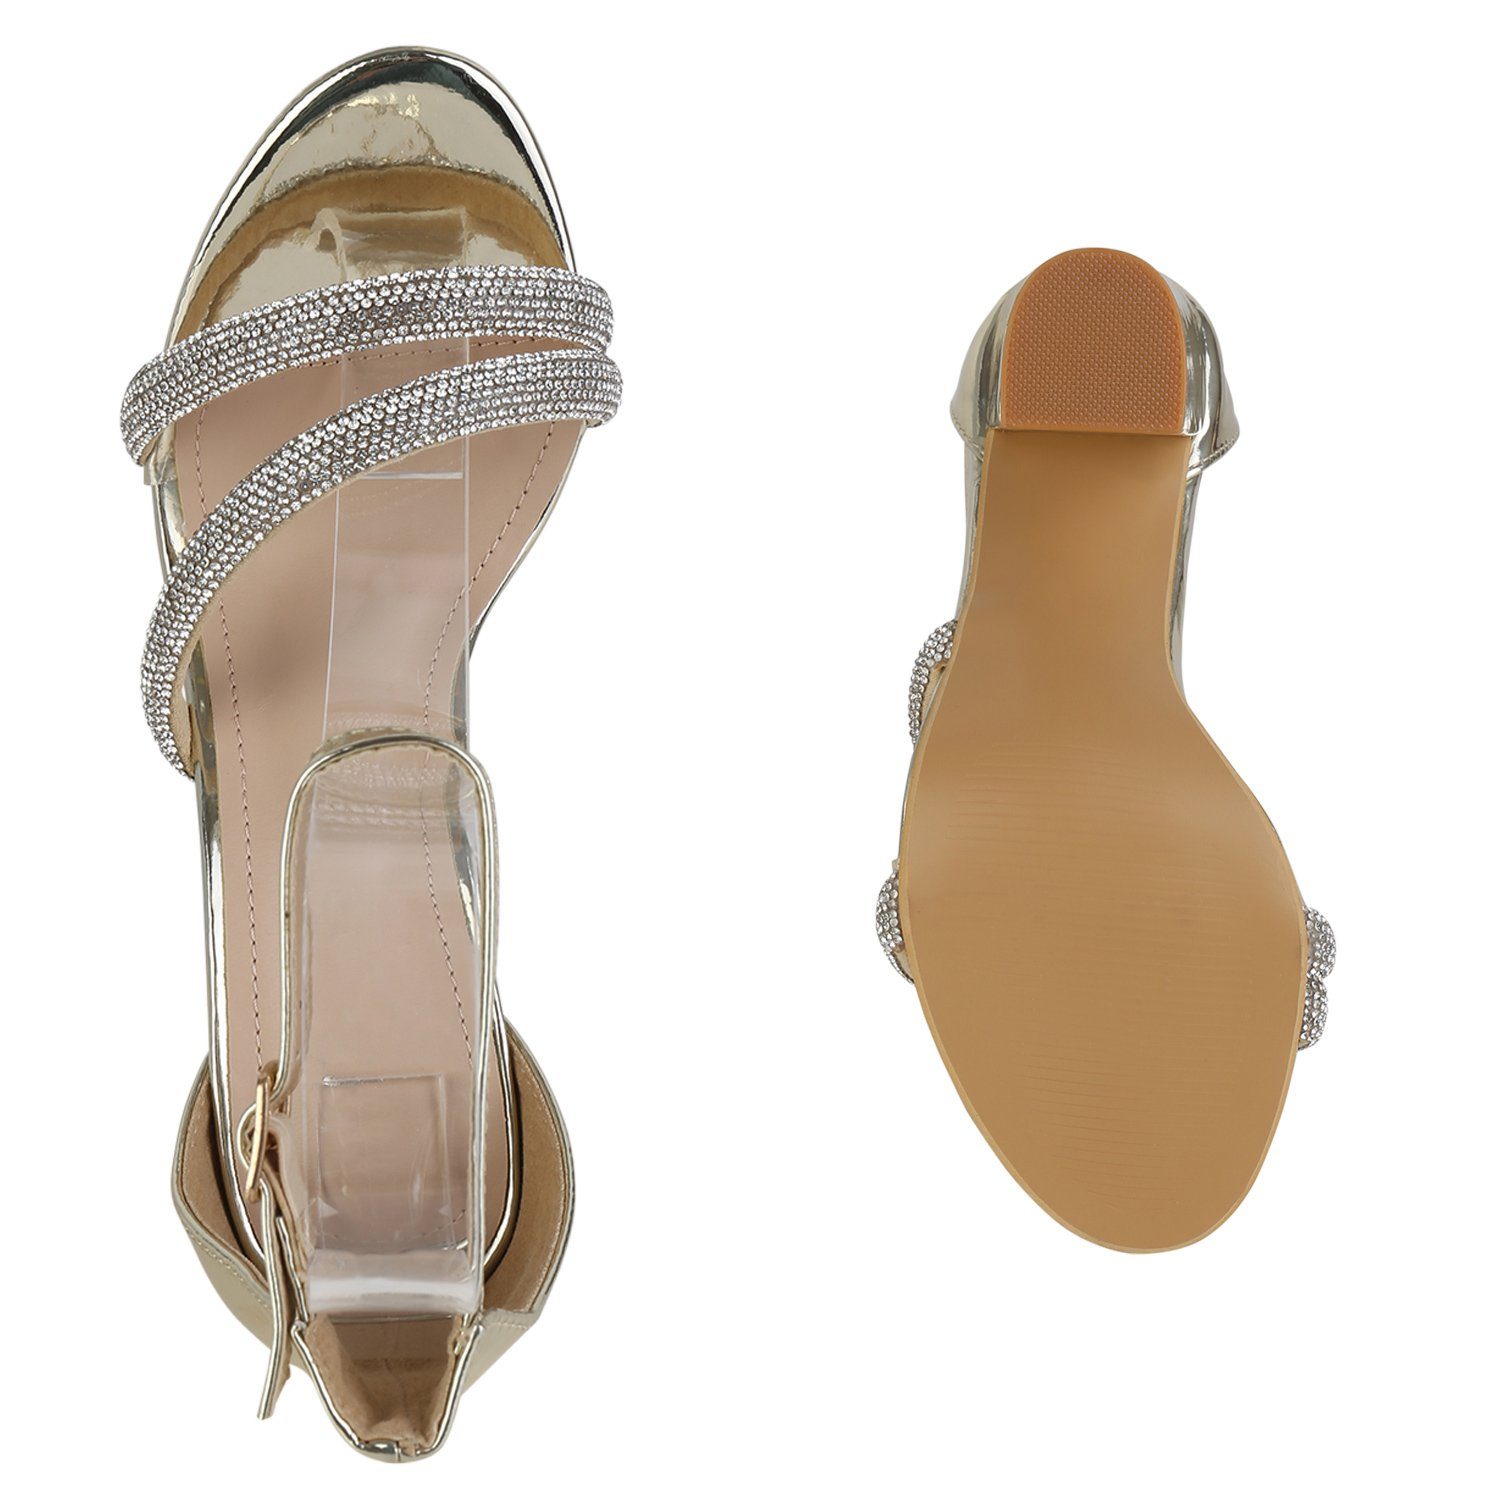 839903 High-Heel-Sandalette HILL Schuhe Bequeme VAN Gold